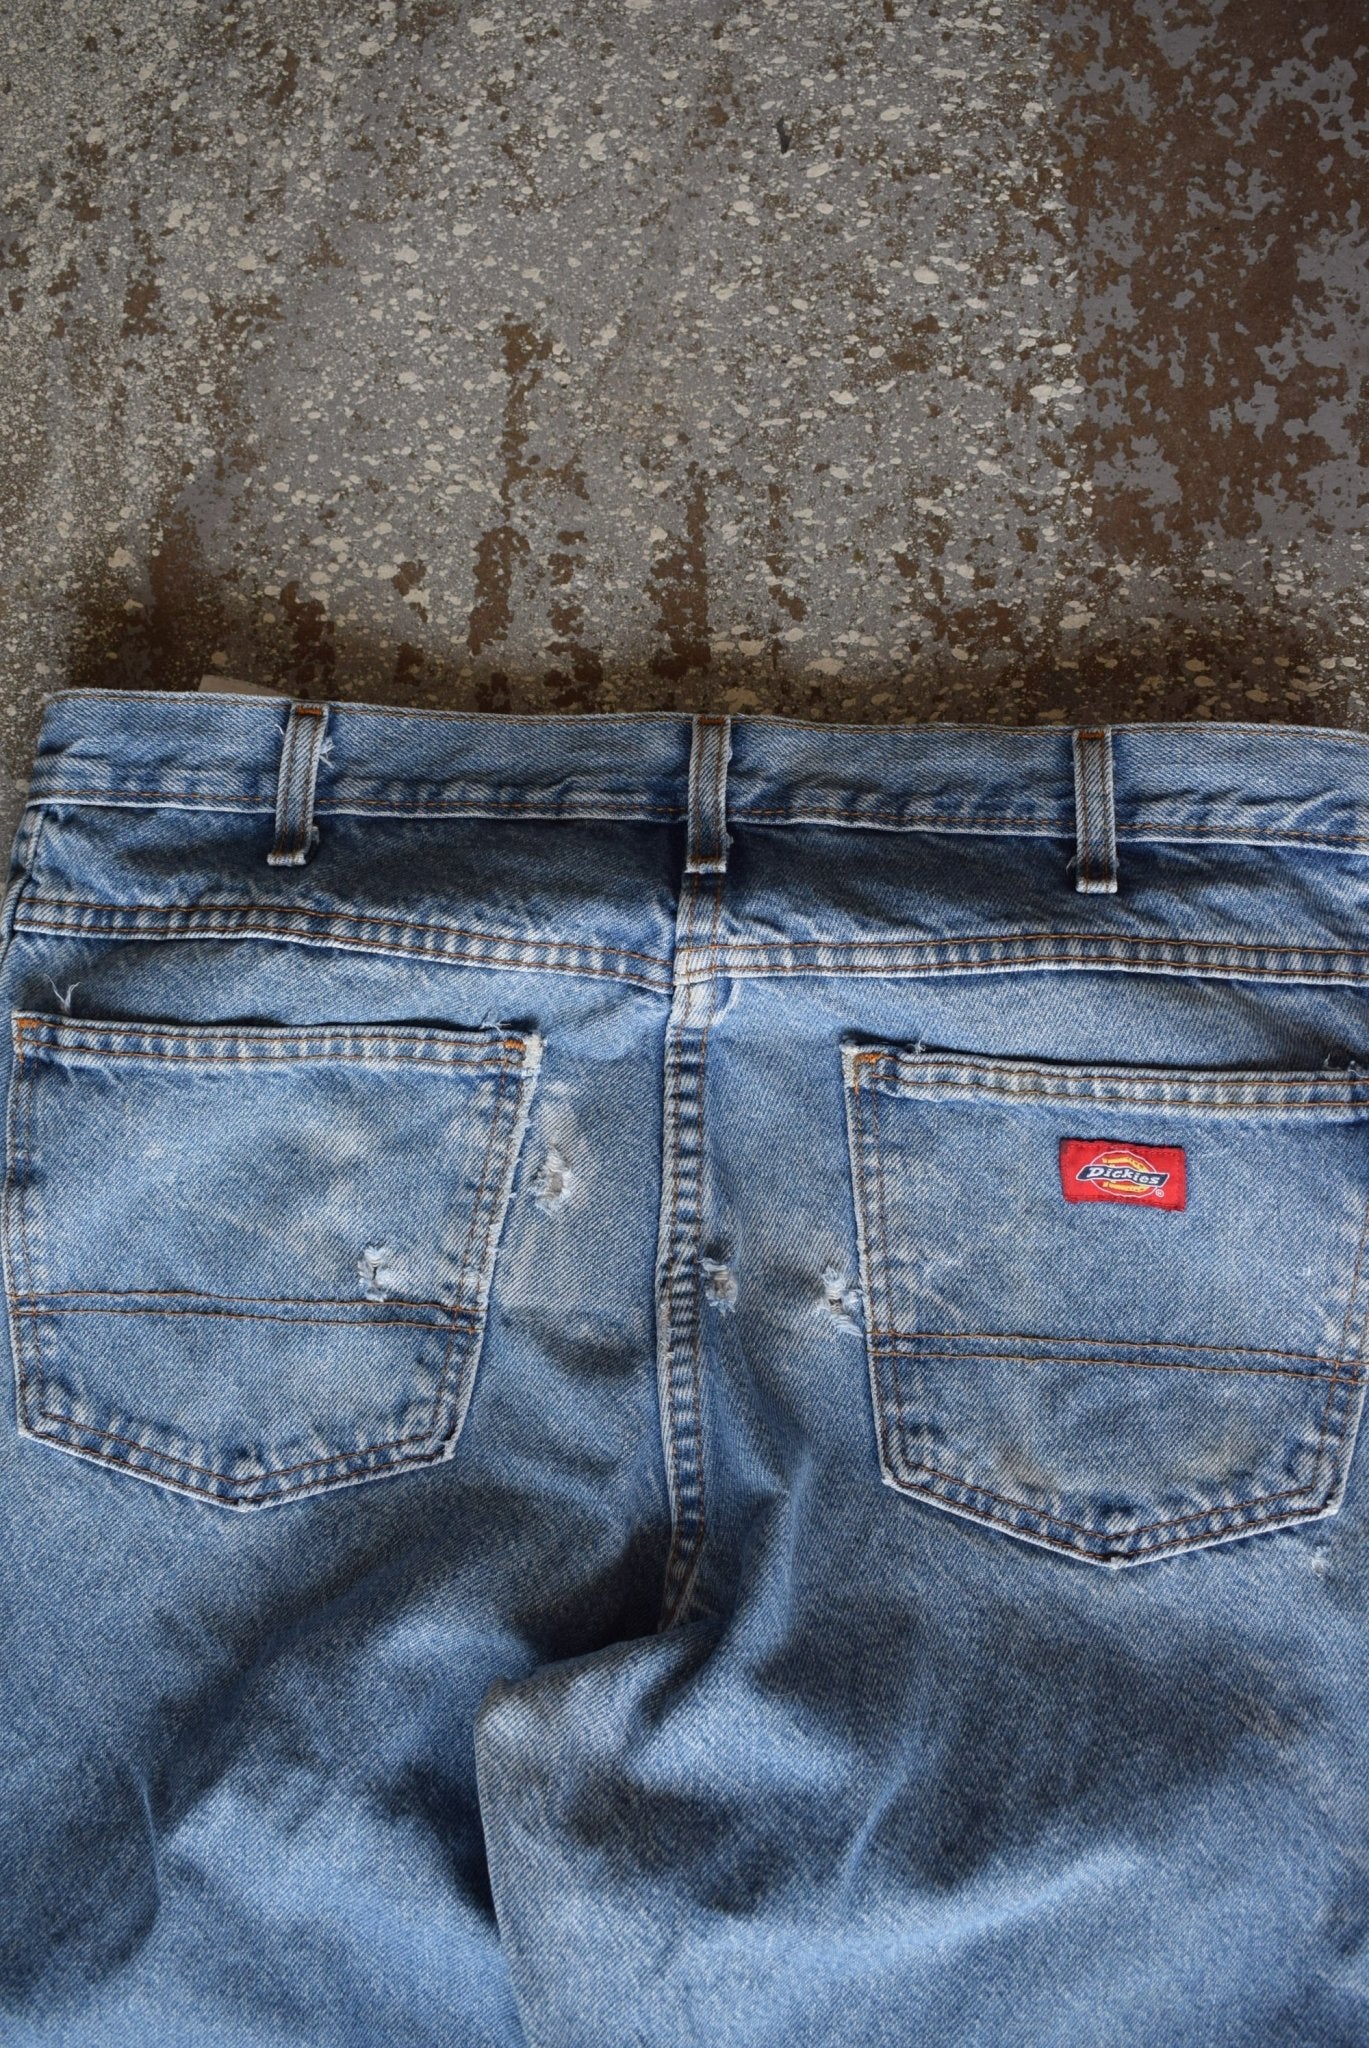 Vintage Dickies Workwear Jeans (33) - Retrospective Store